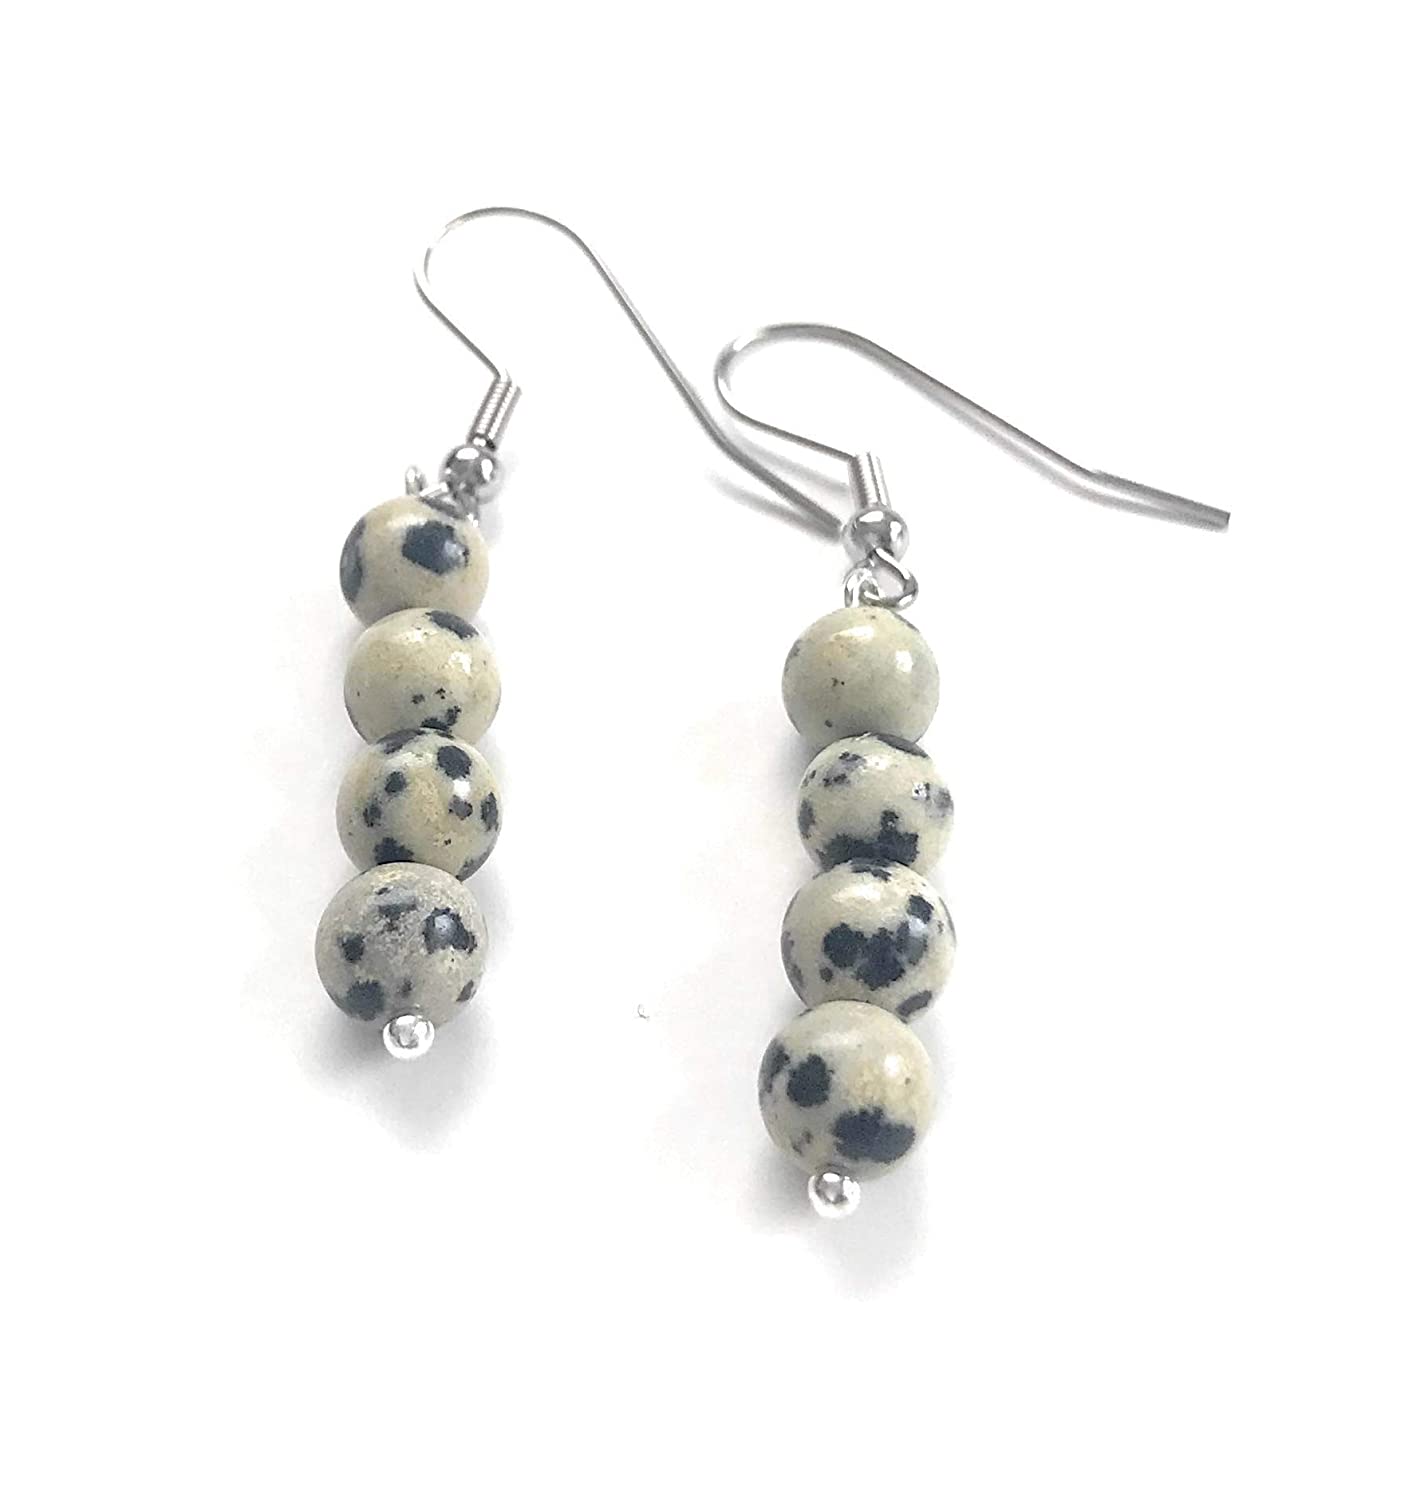 Dalmatian Gemstone Beaded Earrings from Scott D Jewelry Designs